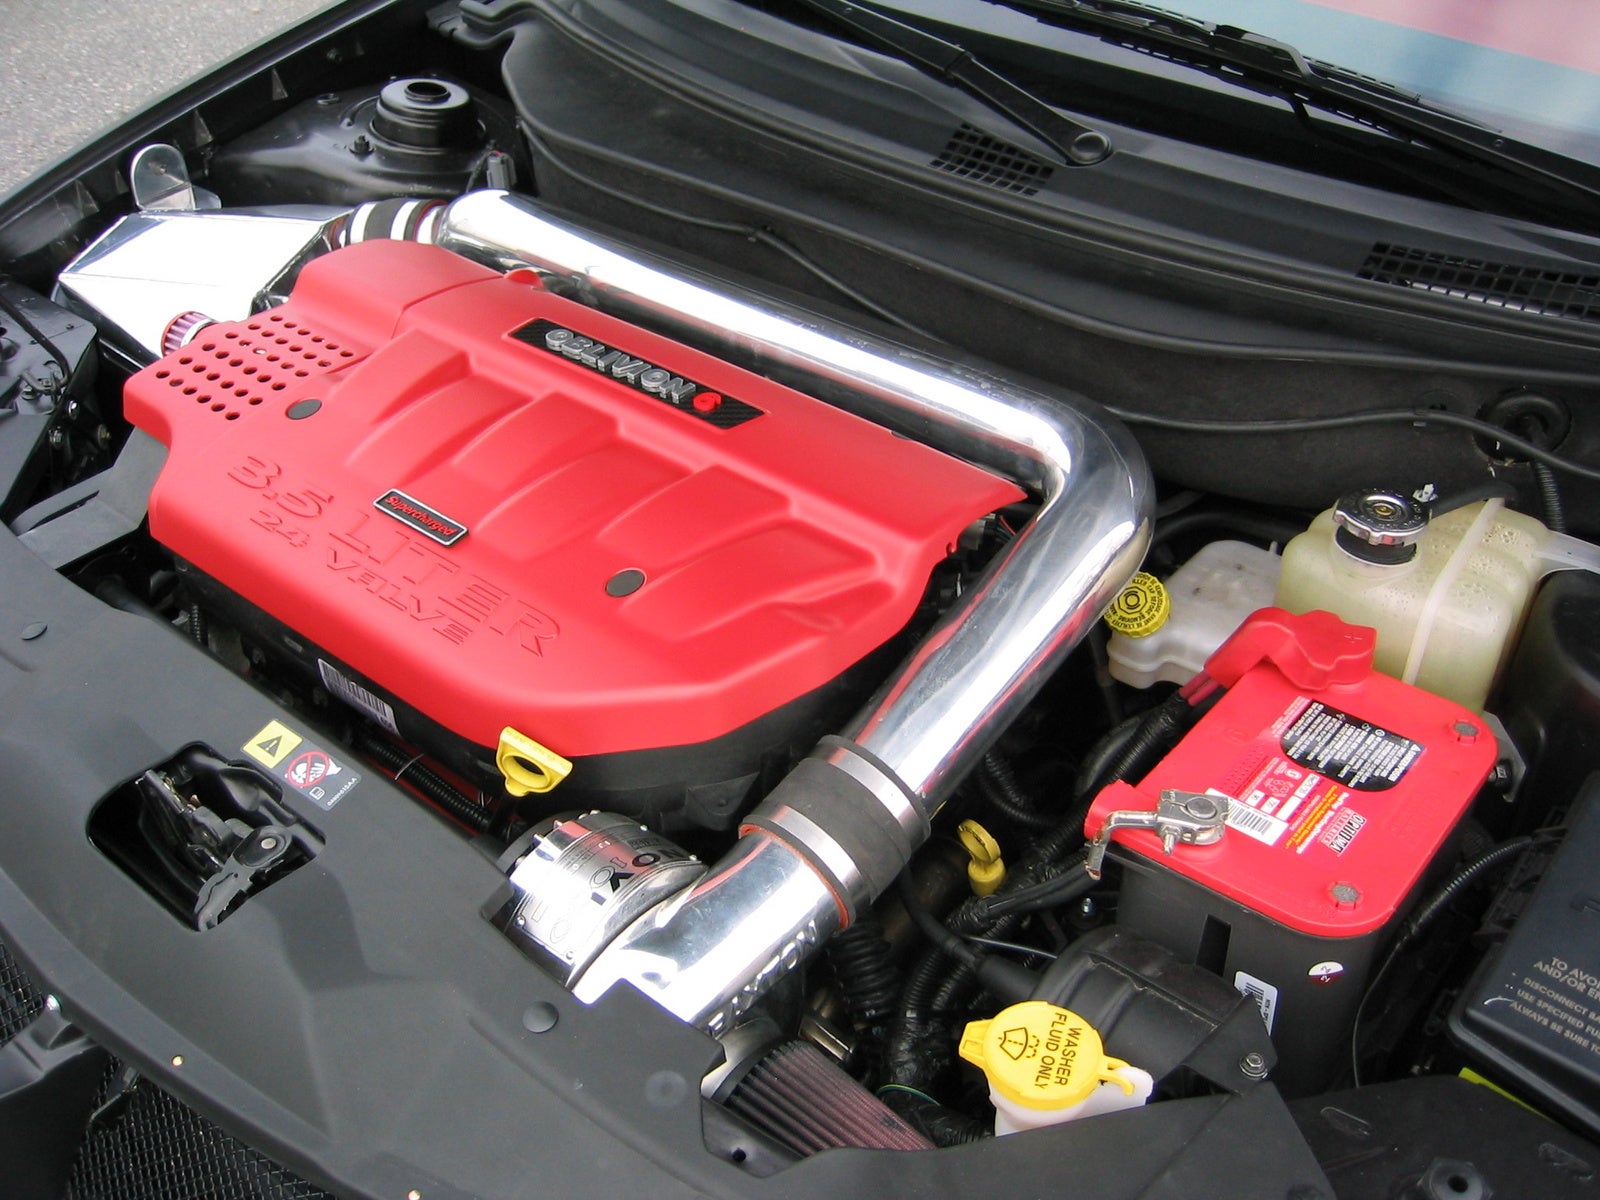 Chrysler 3.5 litre engine #3